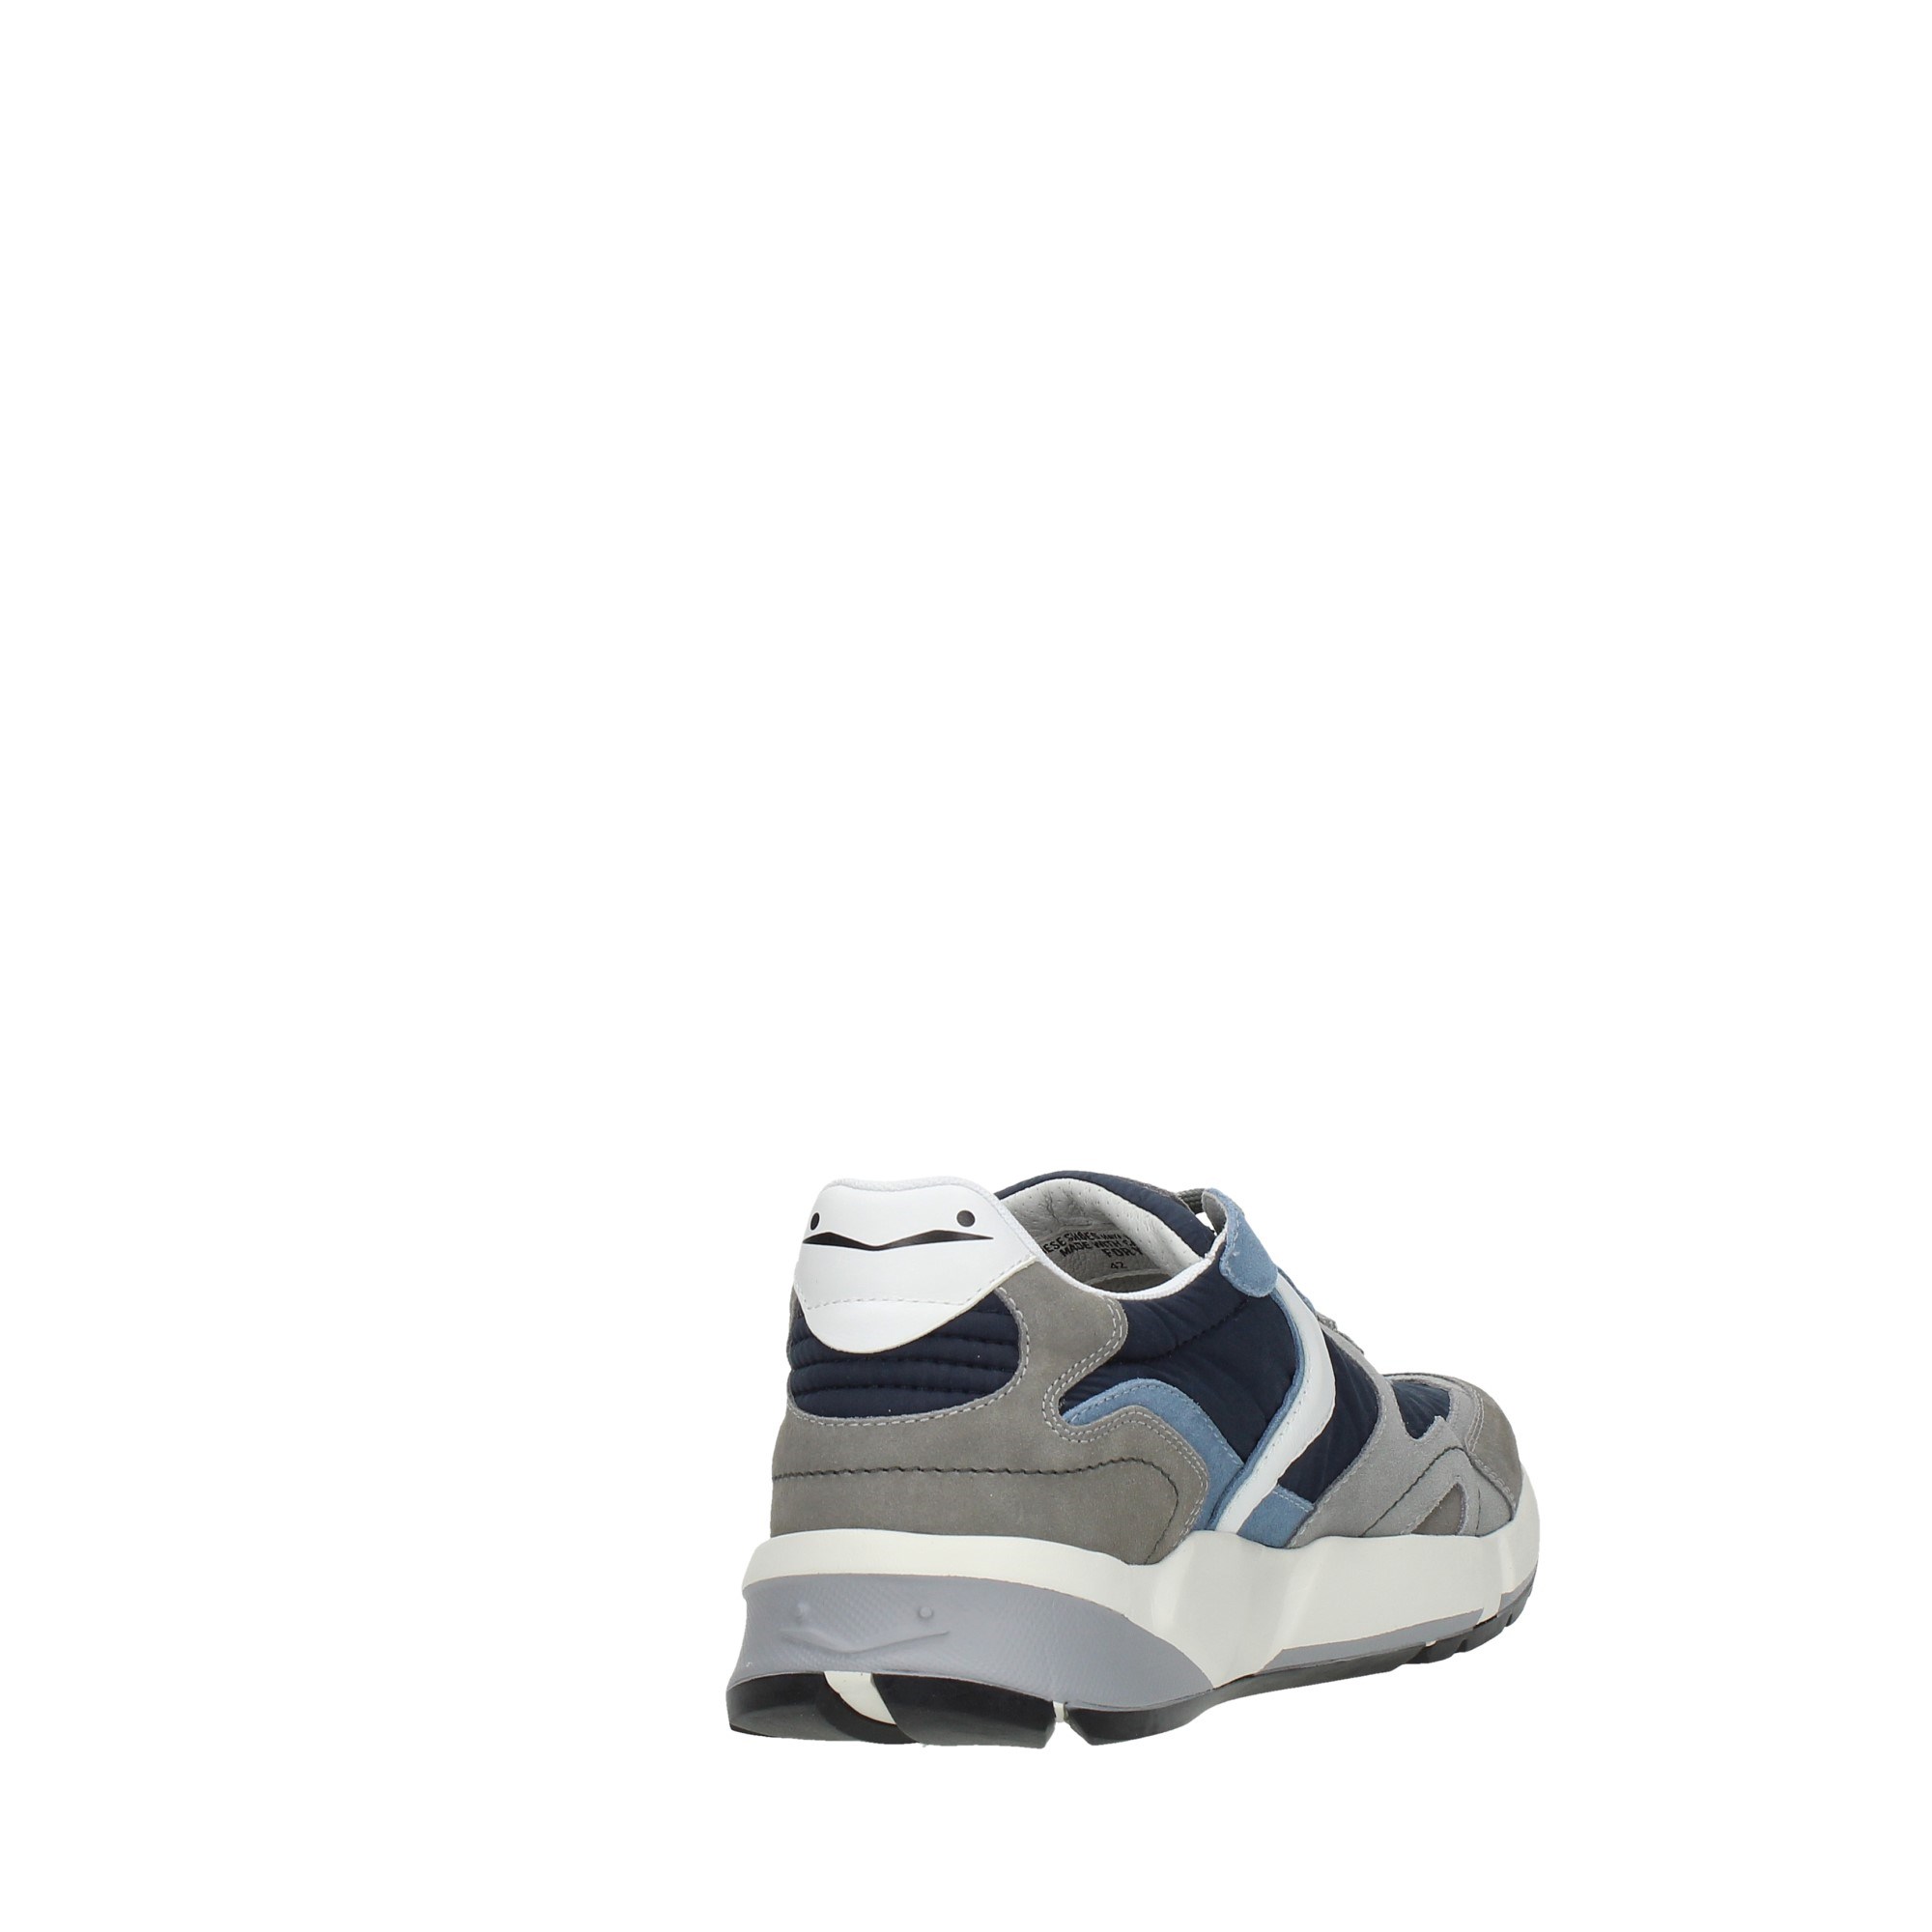 Voile Blanche Scarpe Uomo Sneakers Blu 201-8288-01